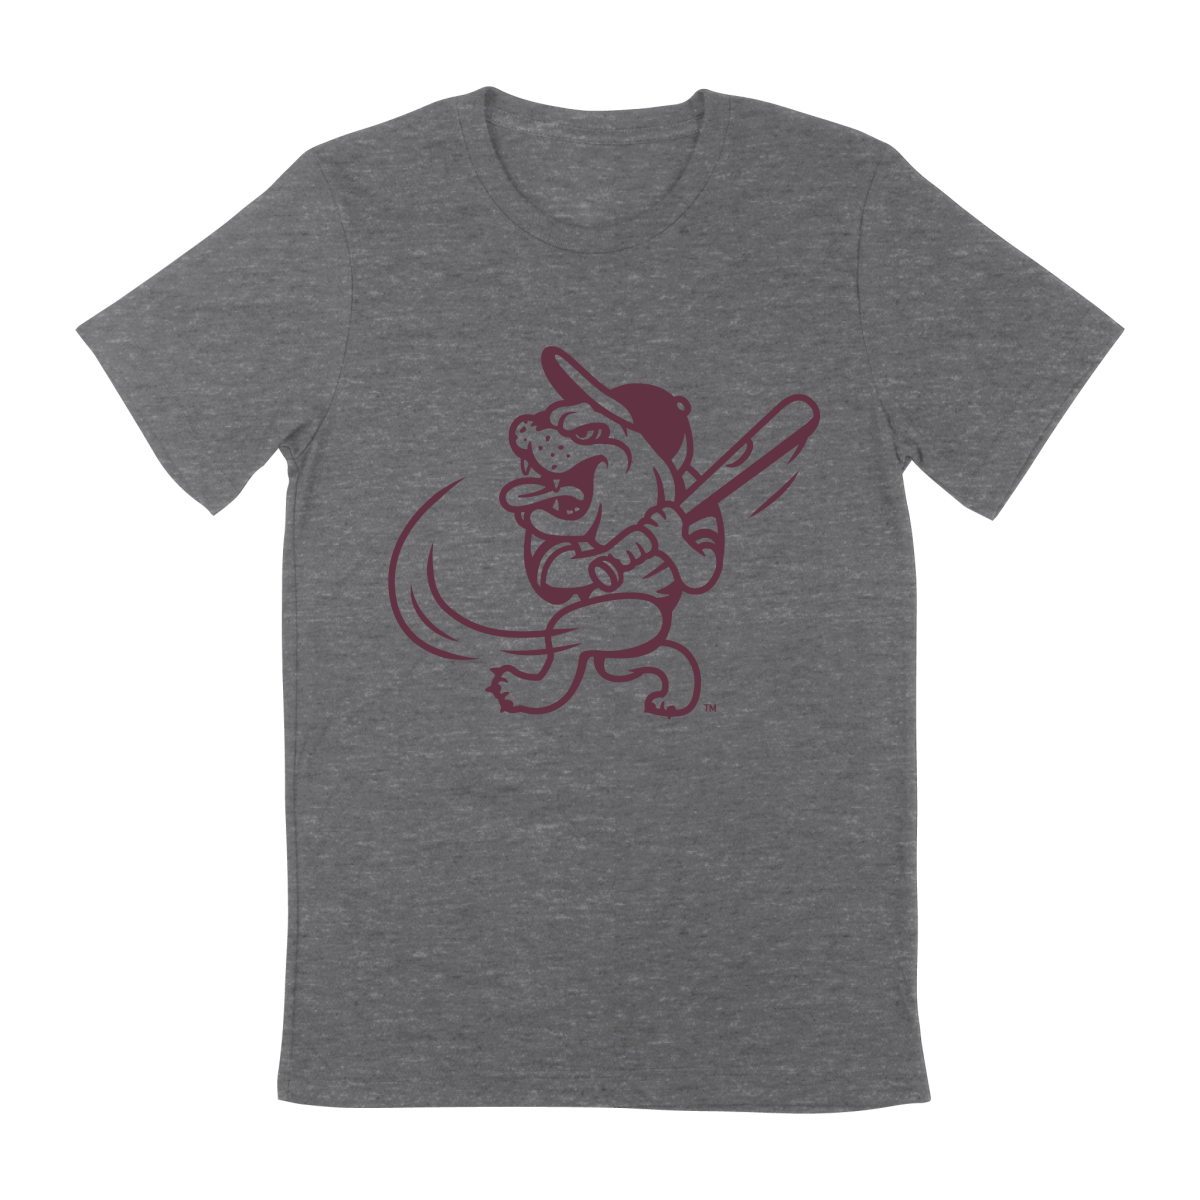 MSU Swinging Bully Youth T-Shirt - Shop B-Unlimited